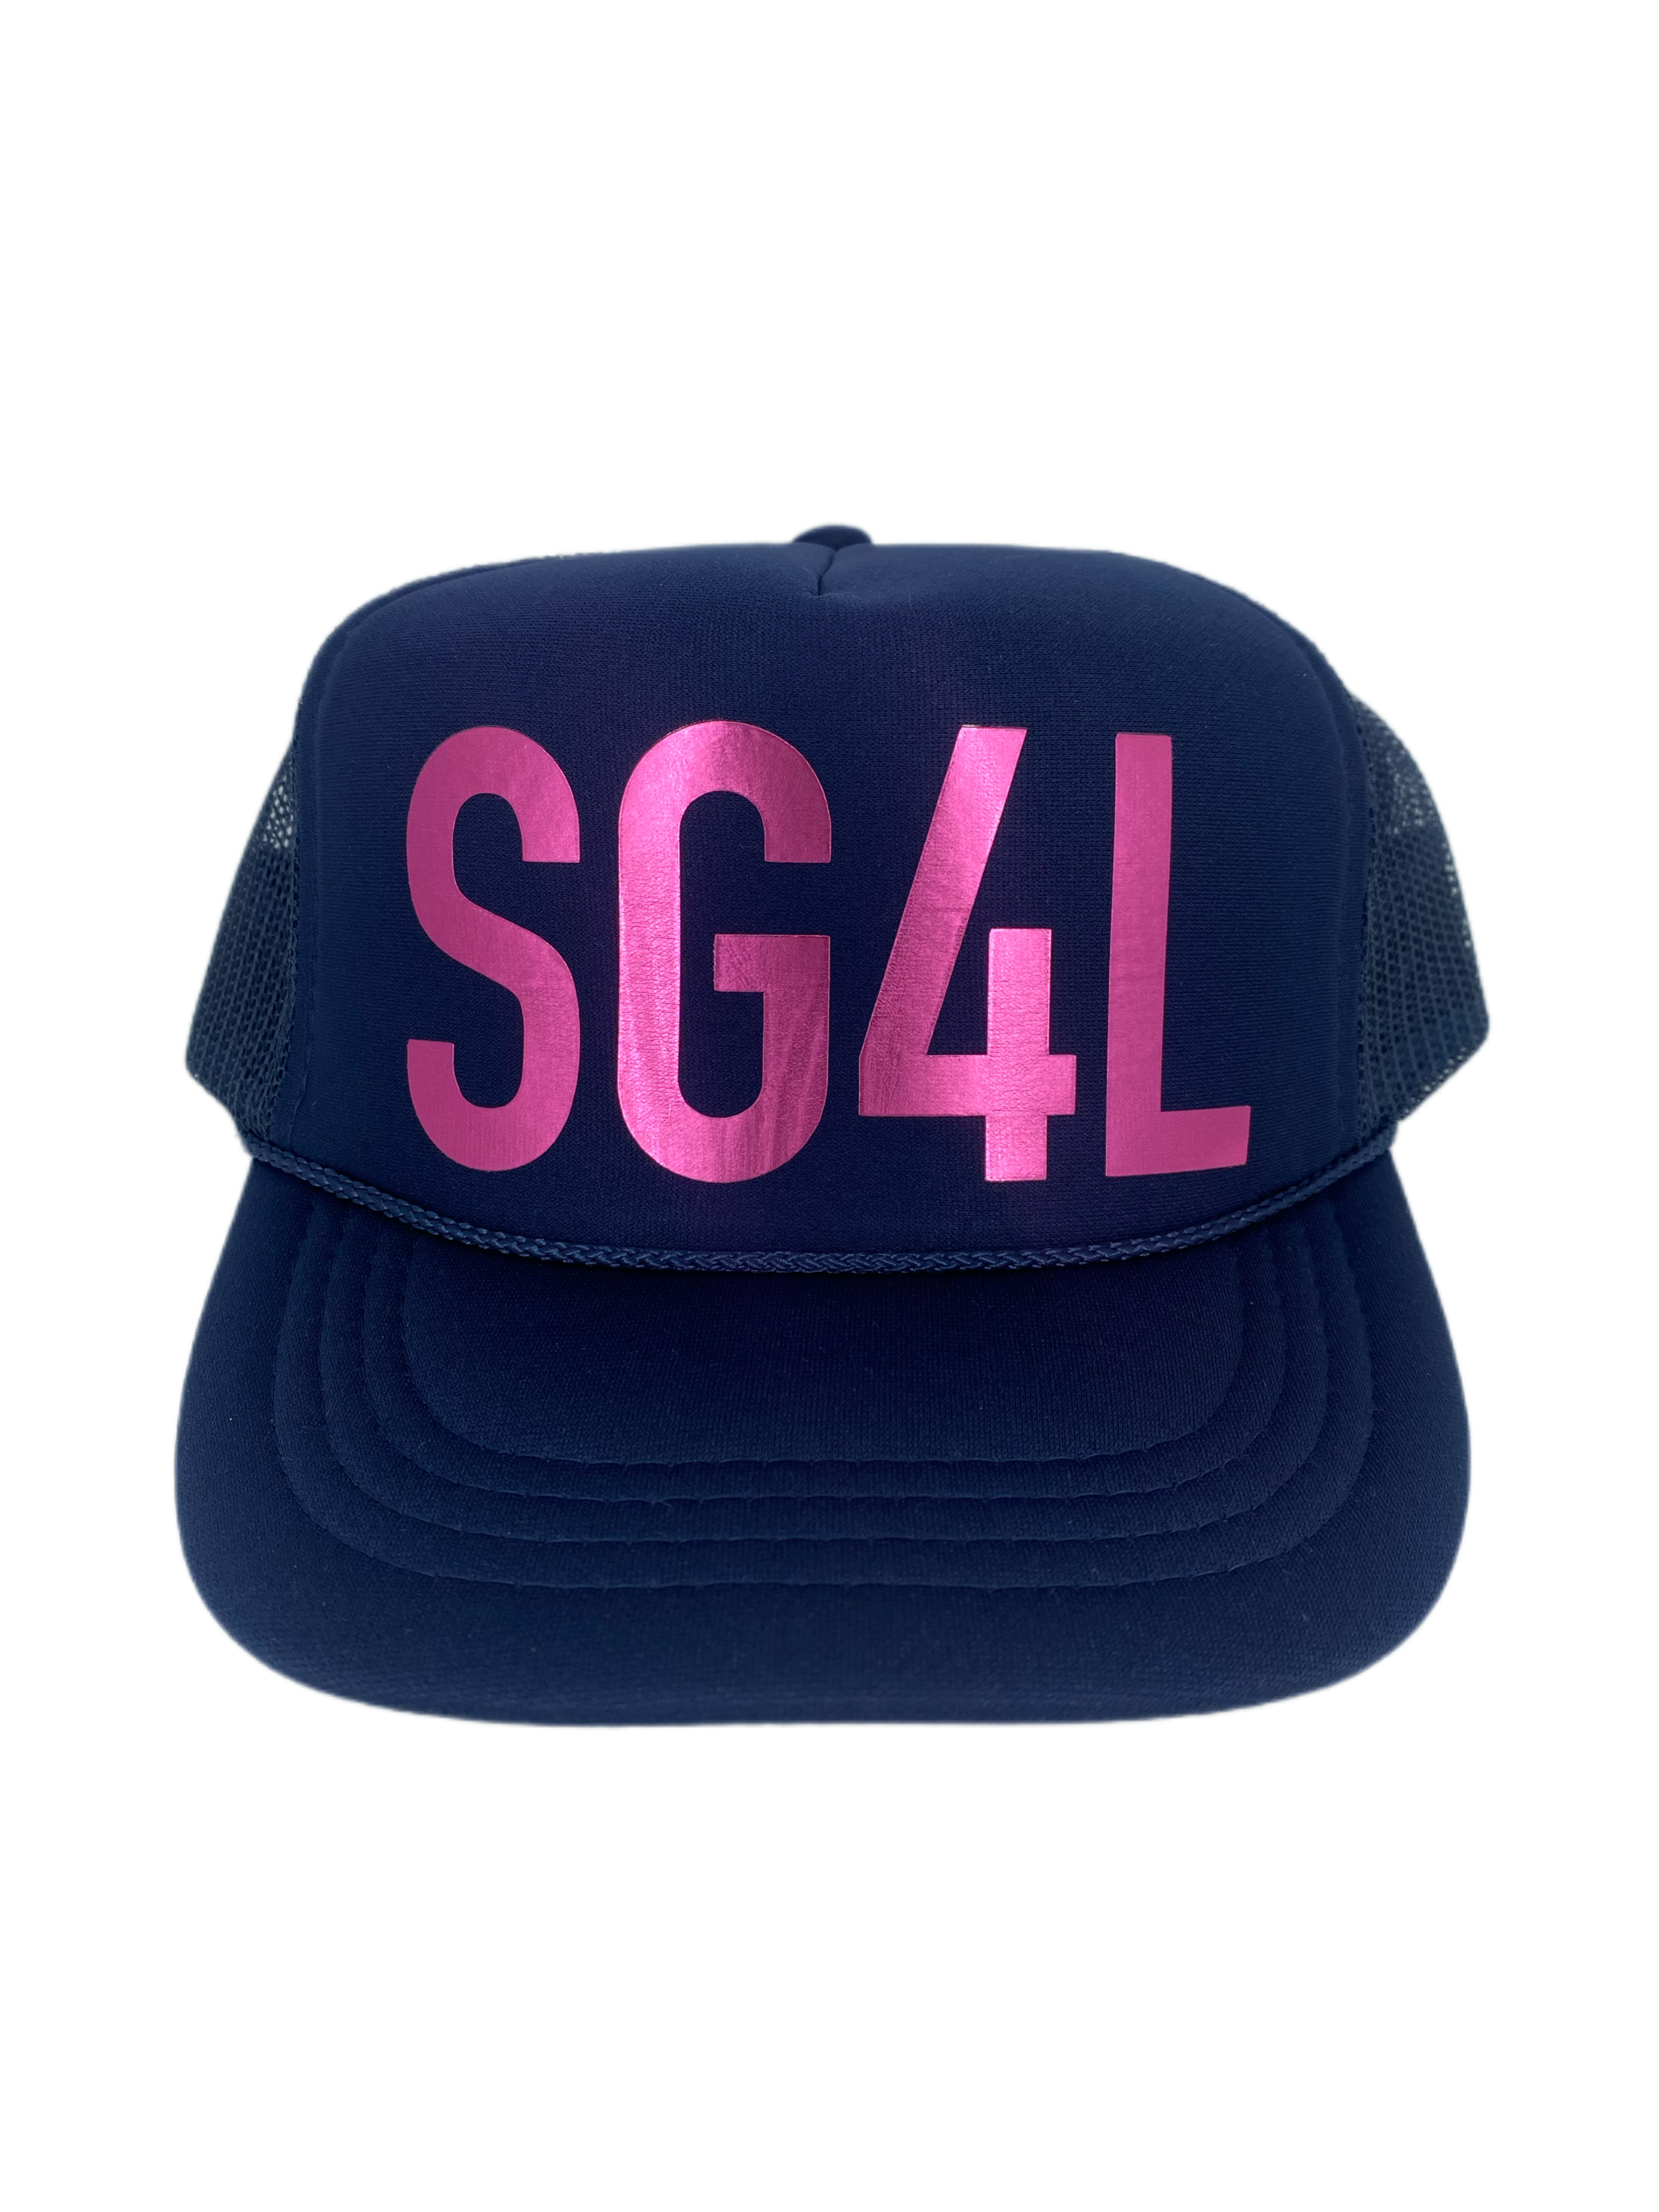 SG4L Trucker Cap